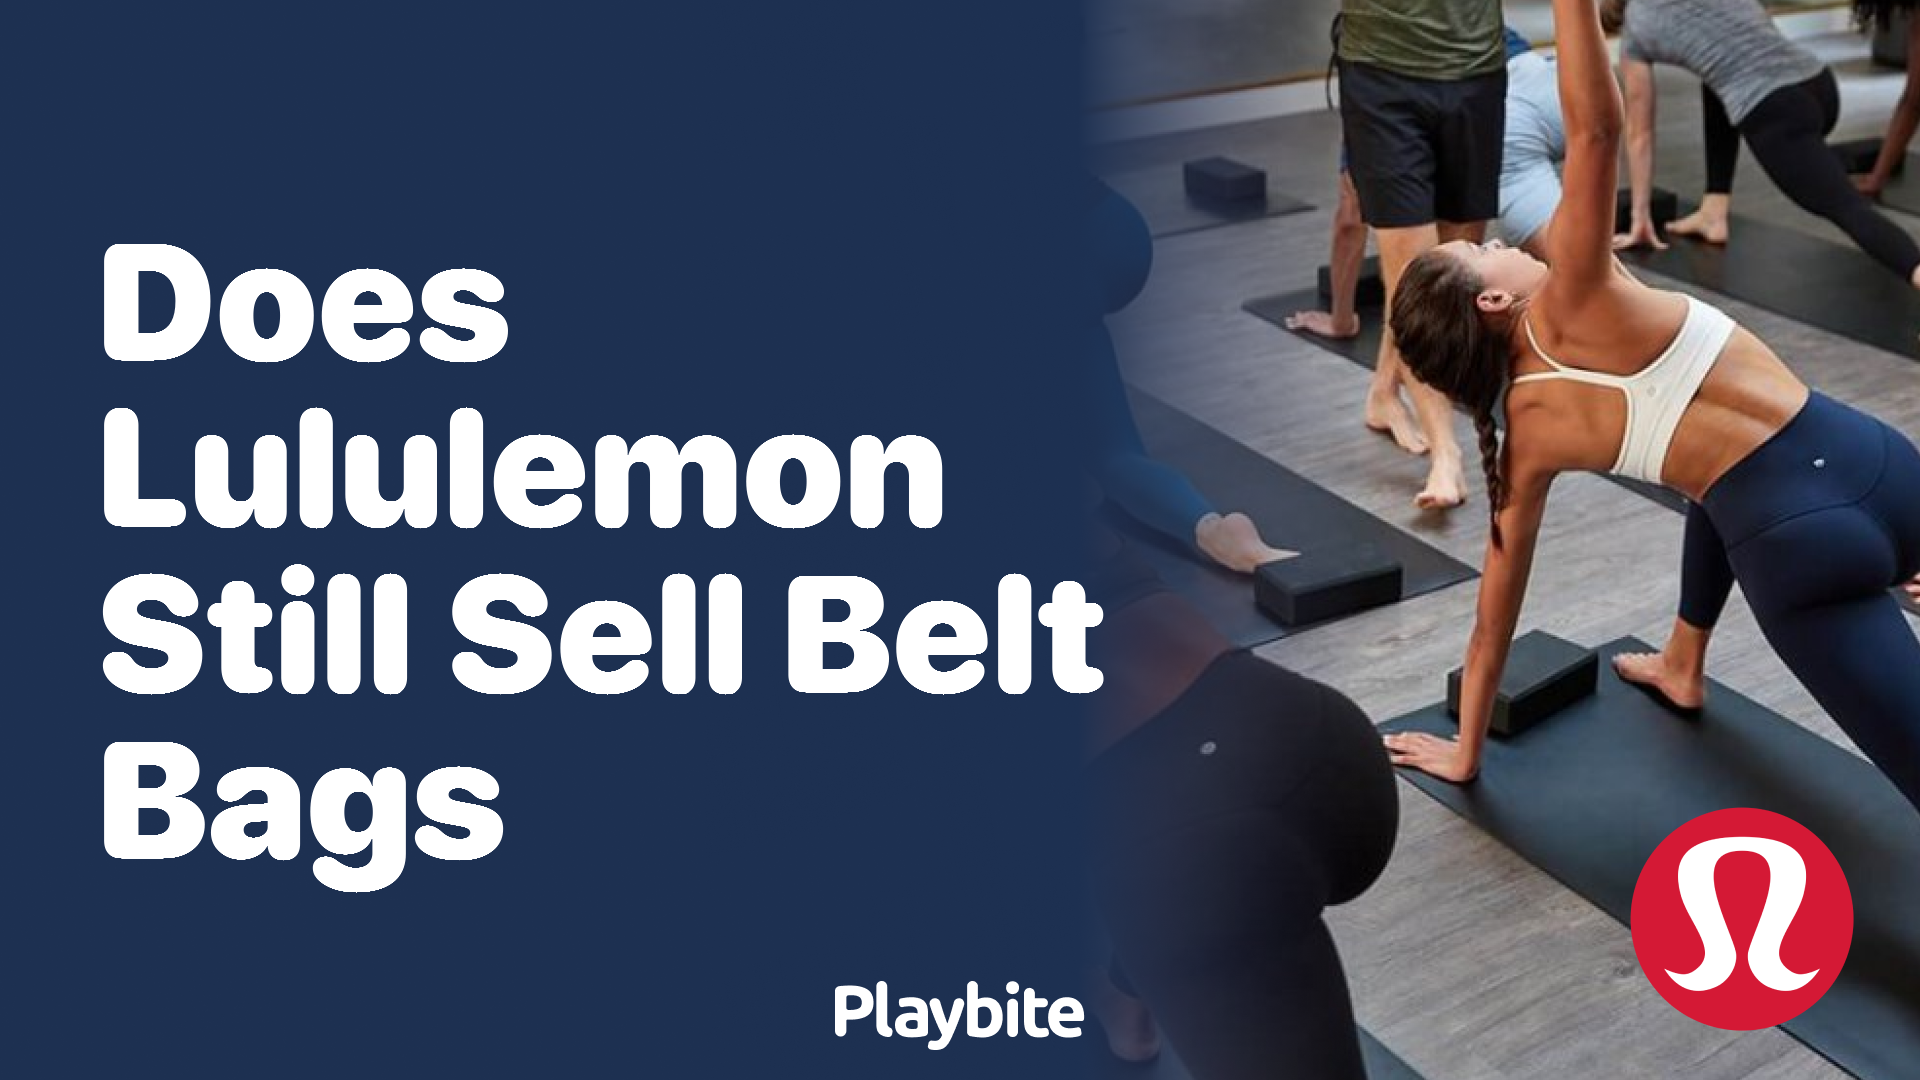 Does Lululemon Still Sell Belt Bags? - Playbite